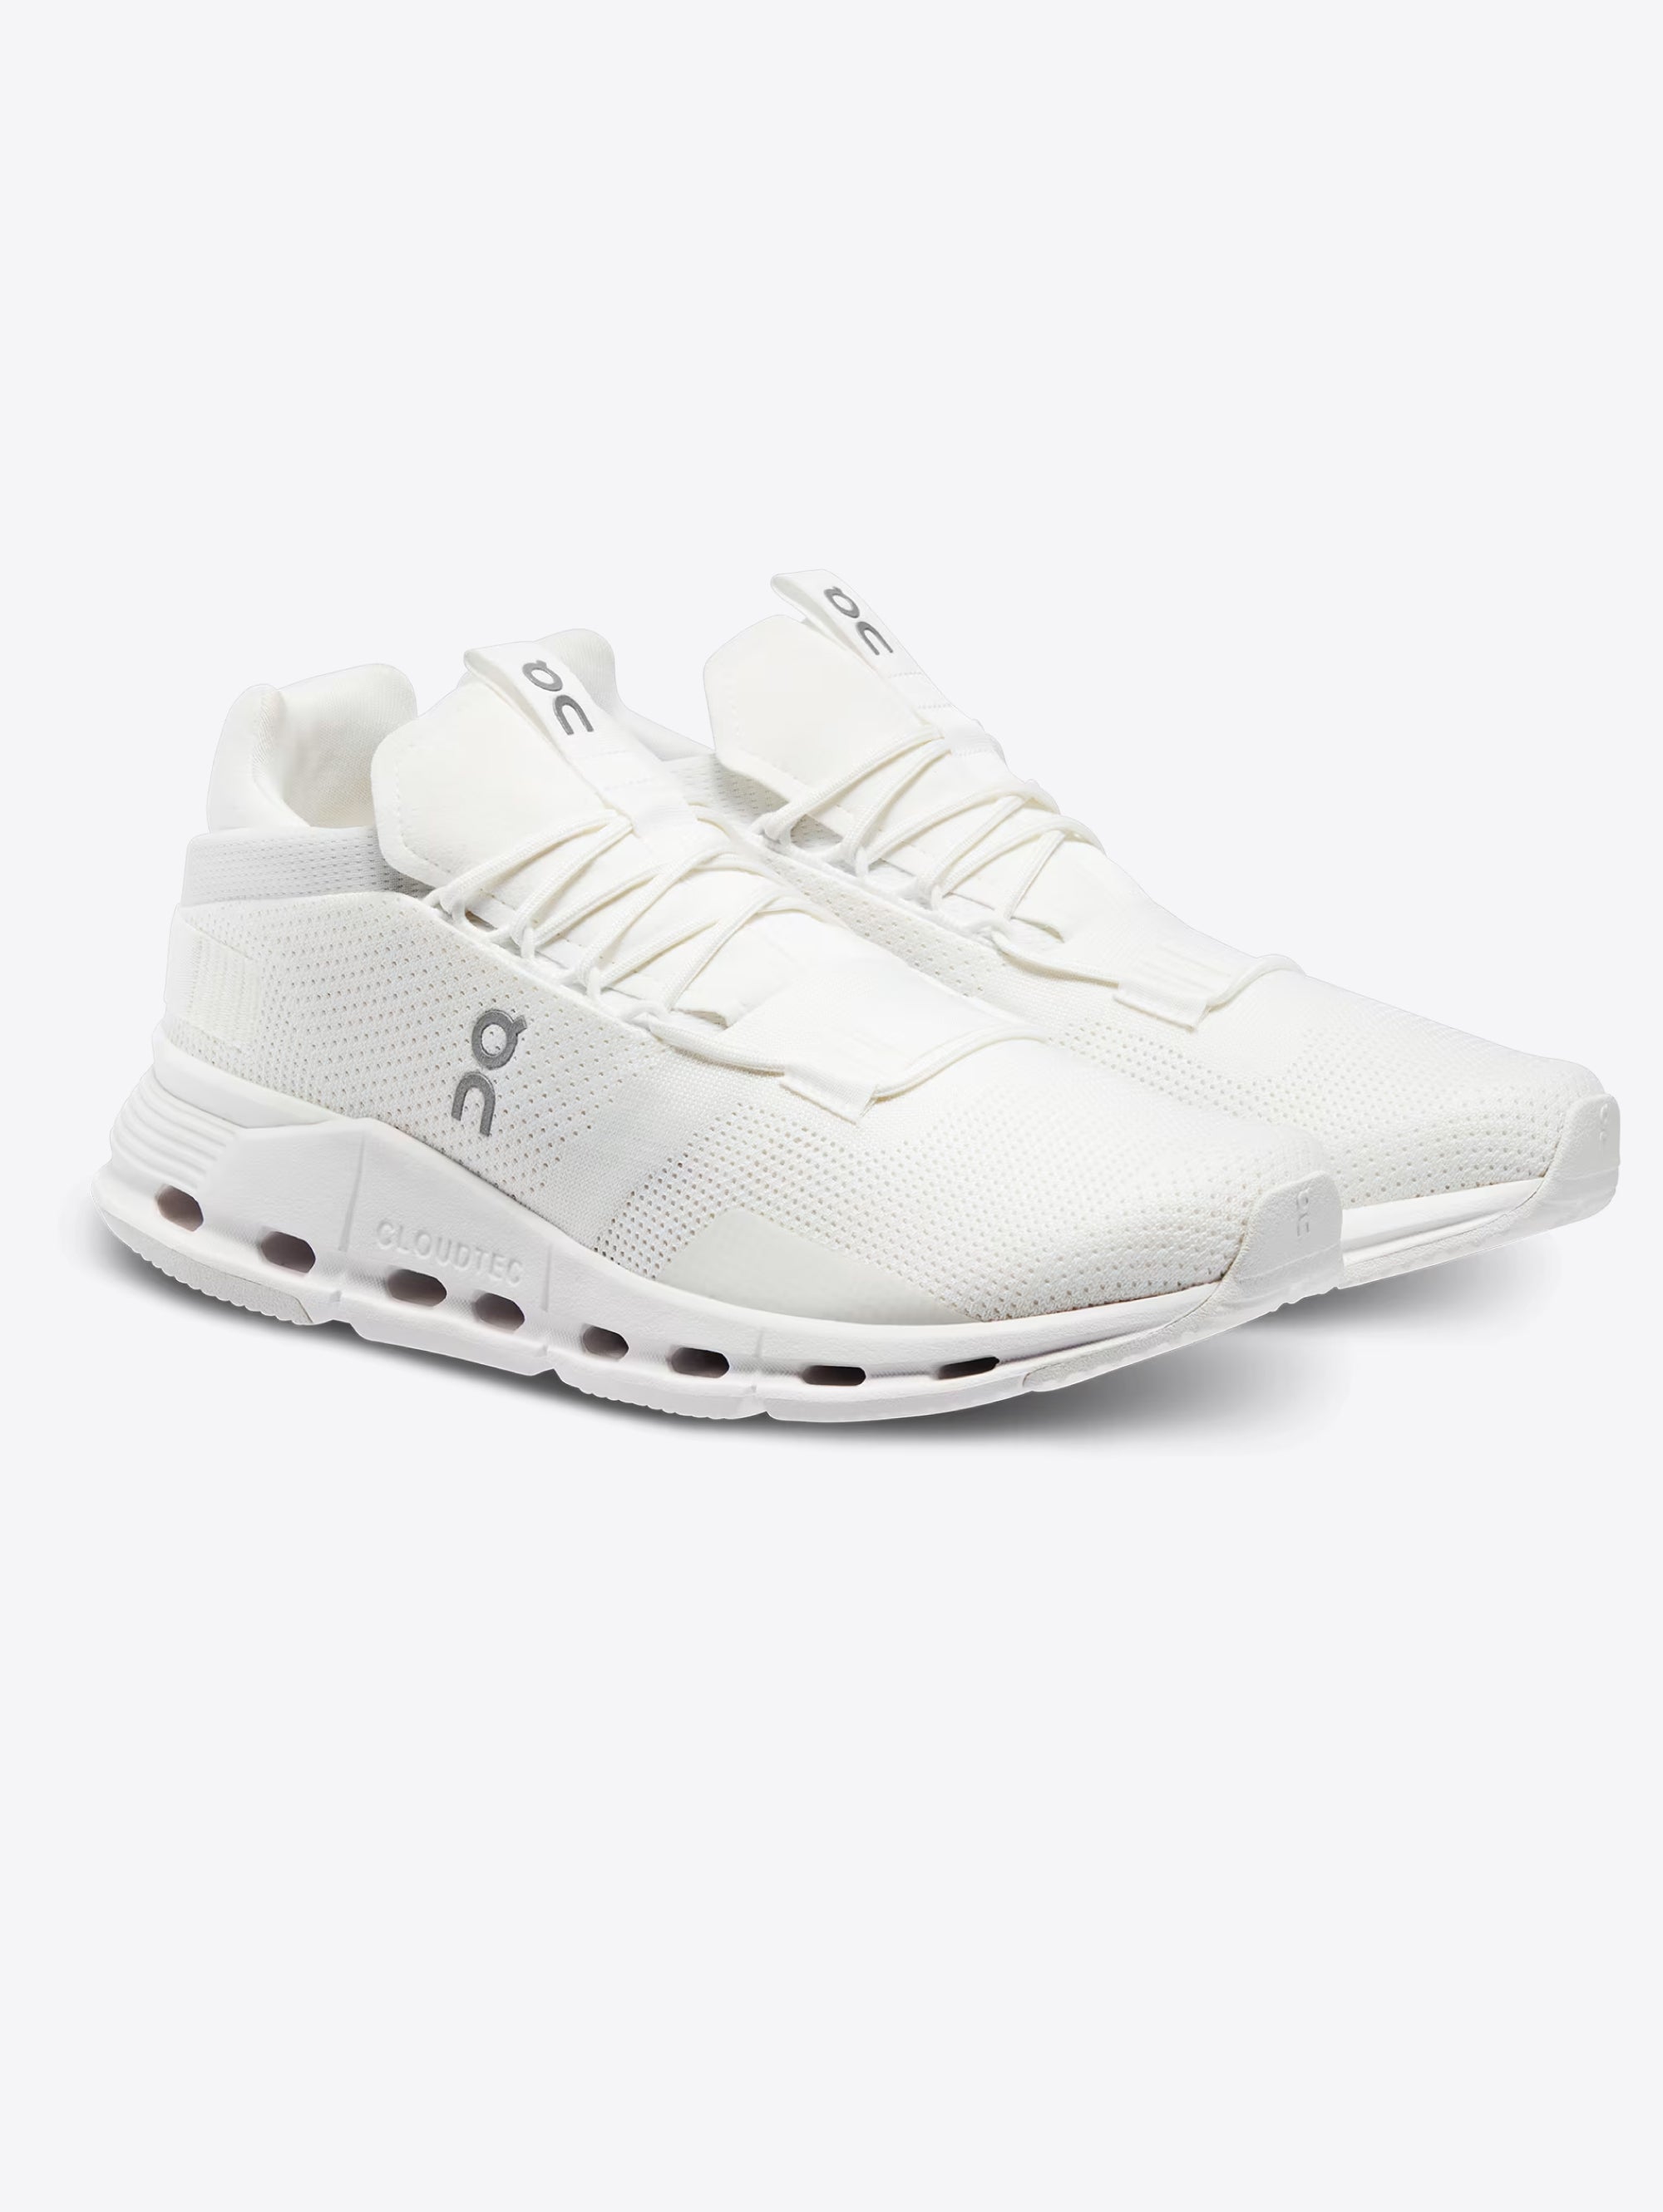 Cloudnova Form Men's Sneakers White